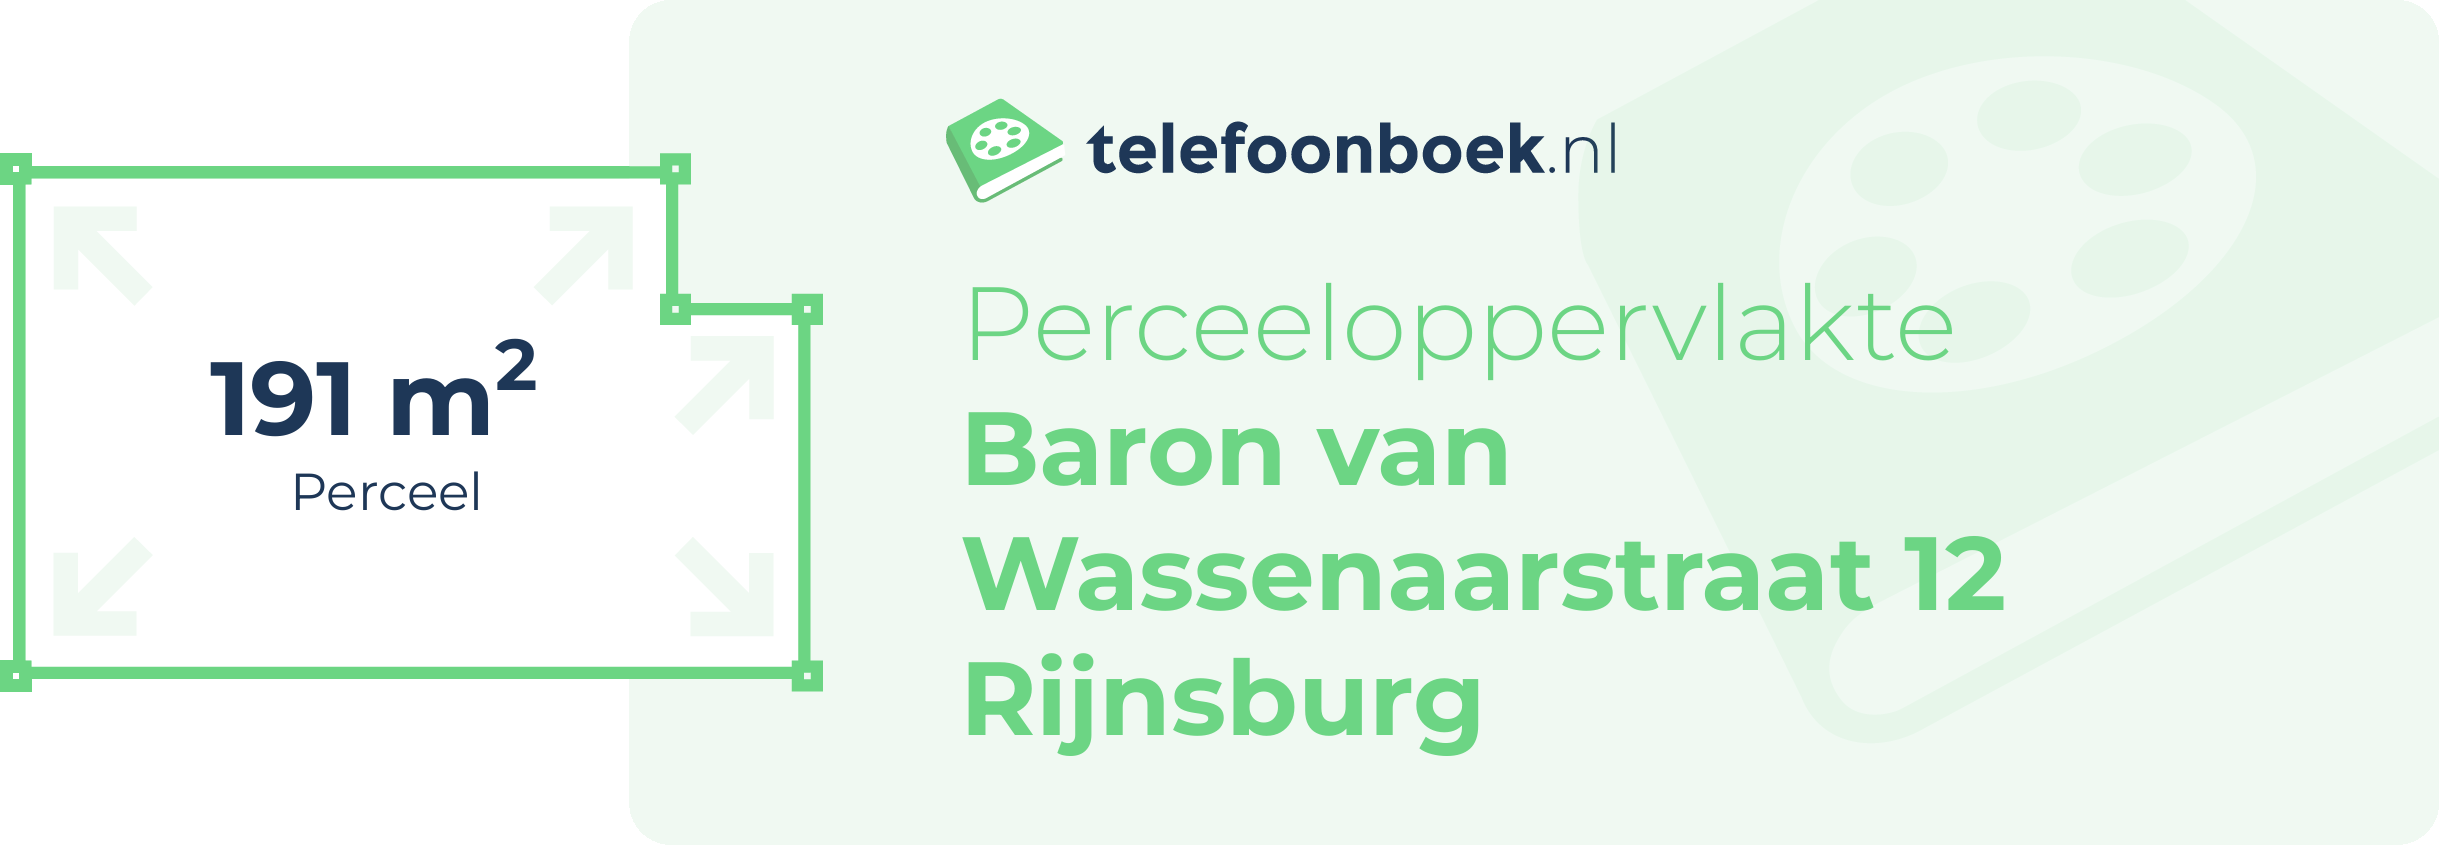 Perceeloppervlakte Baron Van Wassenaarstraat 12 Rijnsburg